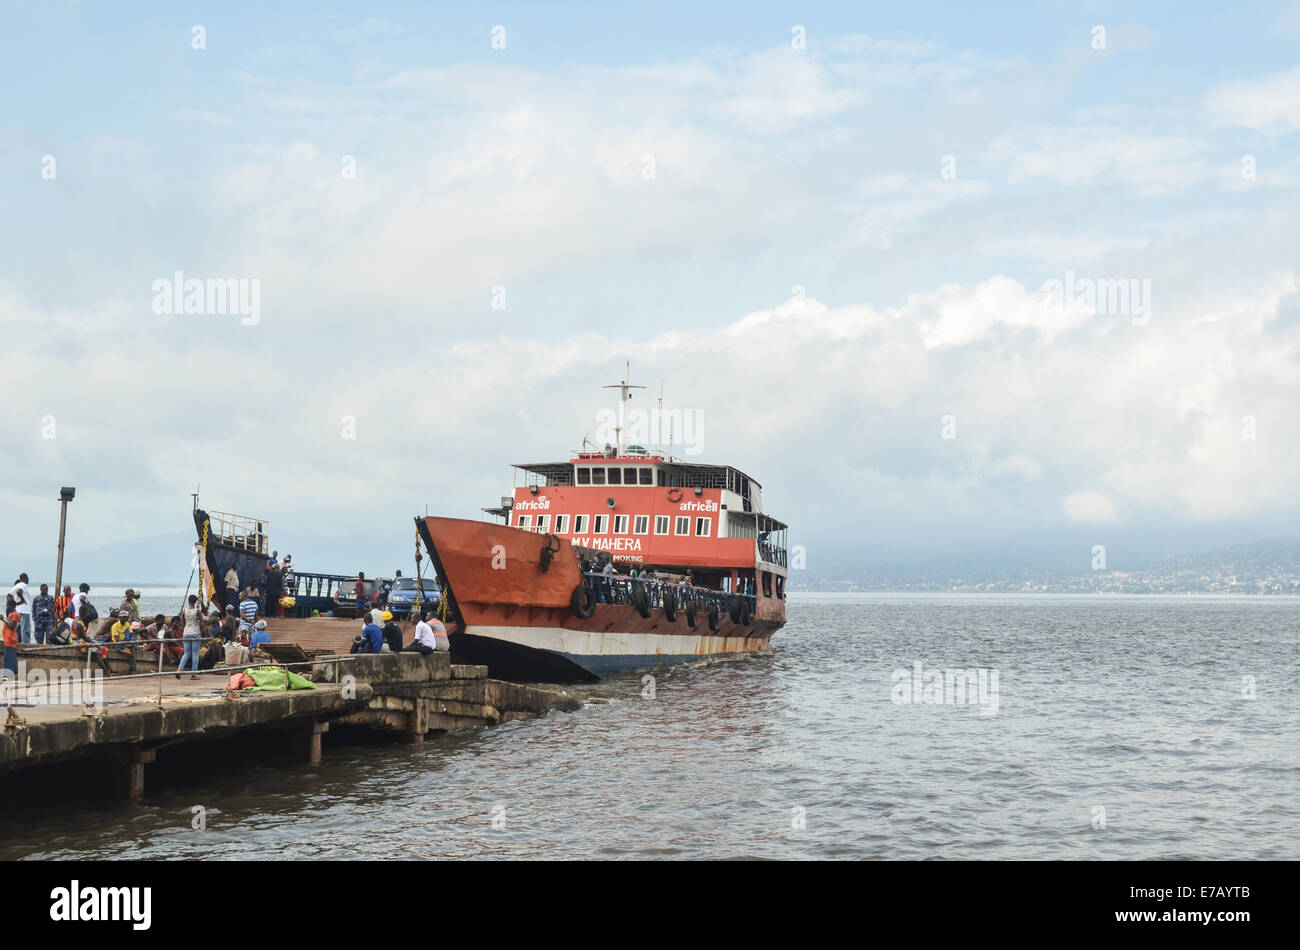 Lungi-Freetown ferry verbindet die Hauptstadt bis zum Flughafen, Sierra Leone, Afrika Stockfoto